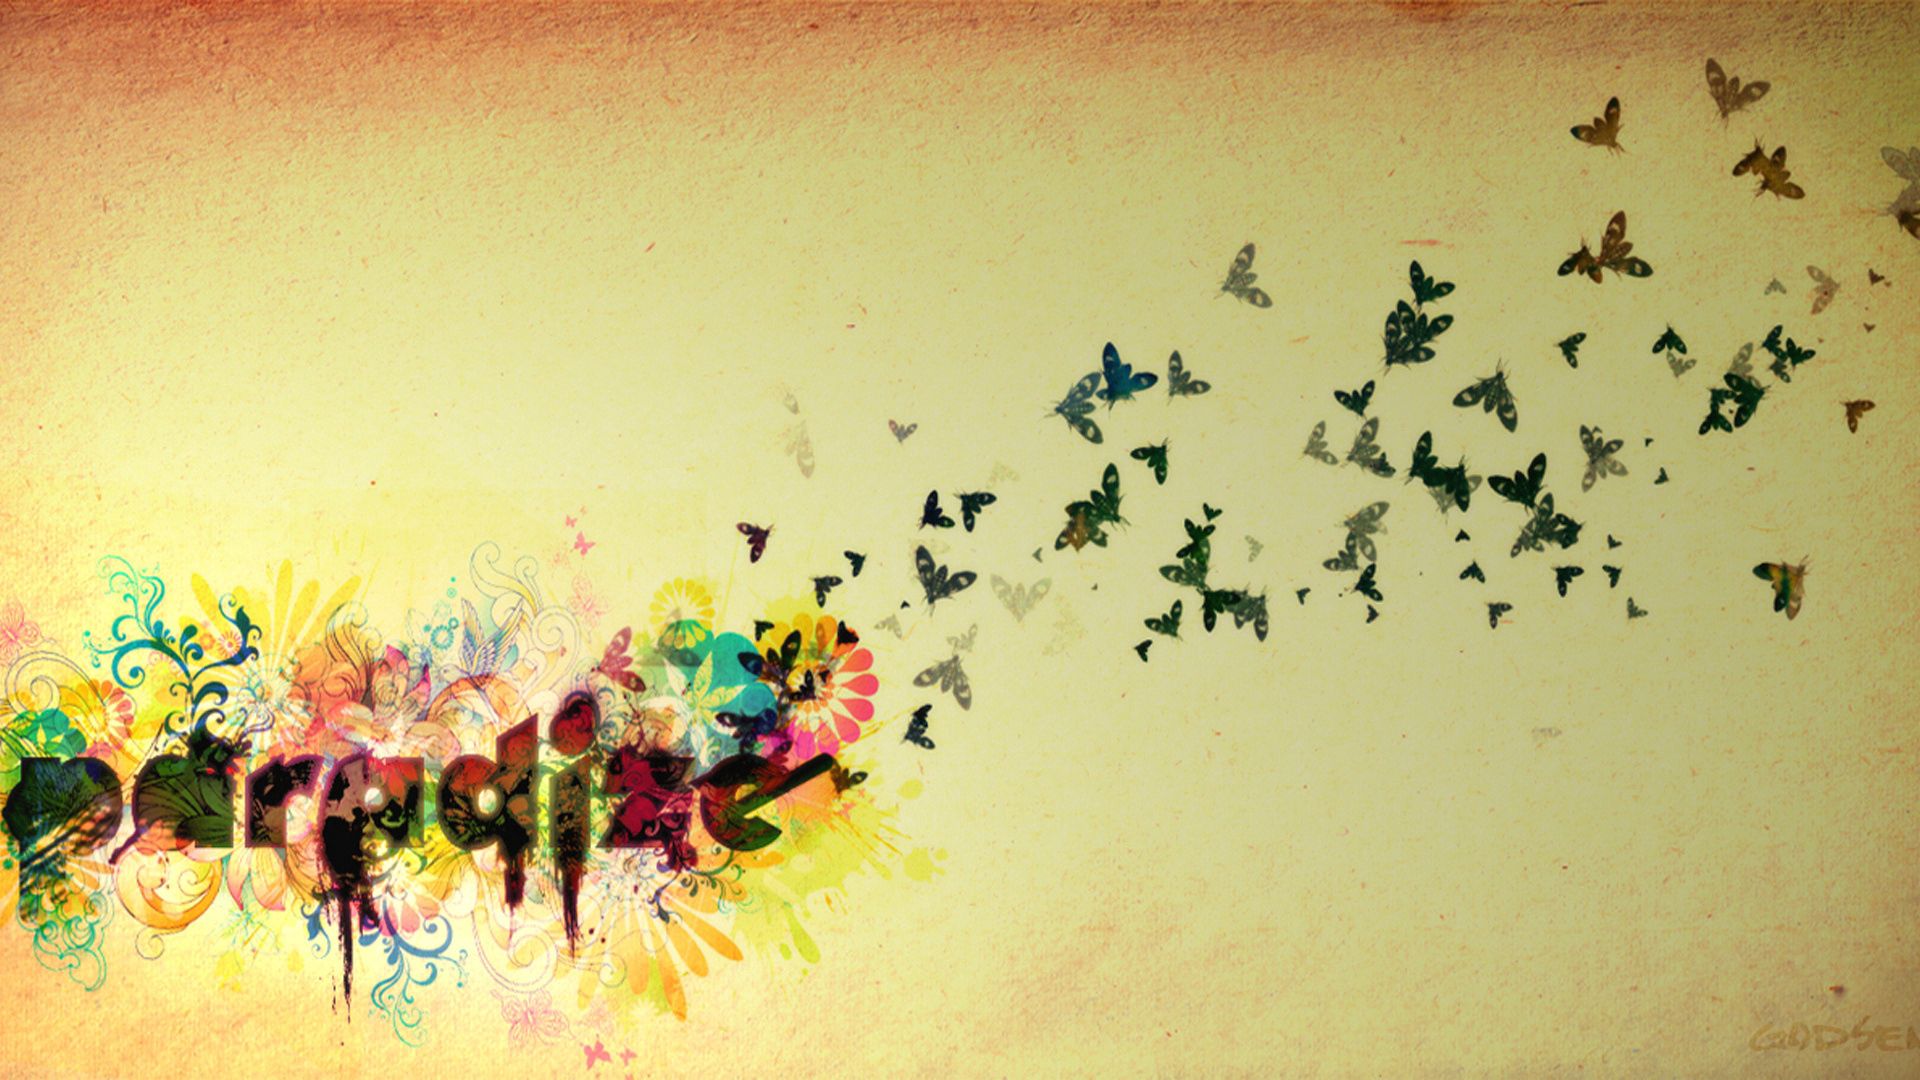 Скачать обои бесплатно Небо, Полет, Слова, Яркий, Птицы, Бабочки картинка на рабочий стол ПК